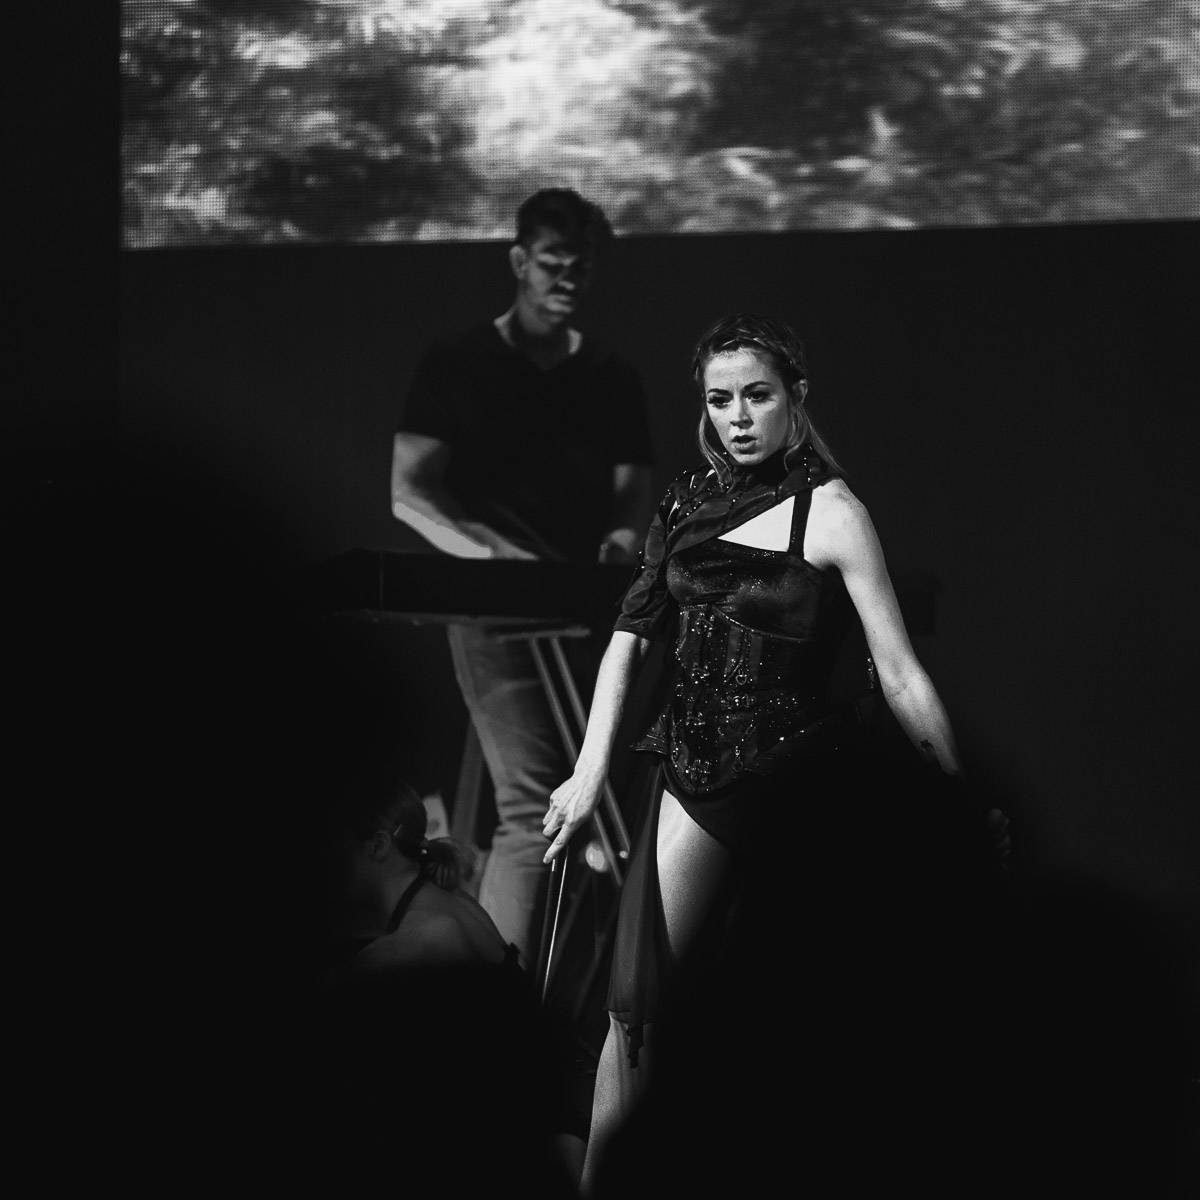 Božská Lindsey Stirling hrála a tančila v O2 universum. Představila se jako Artemis